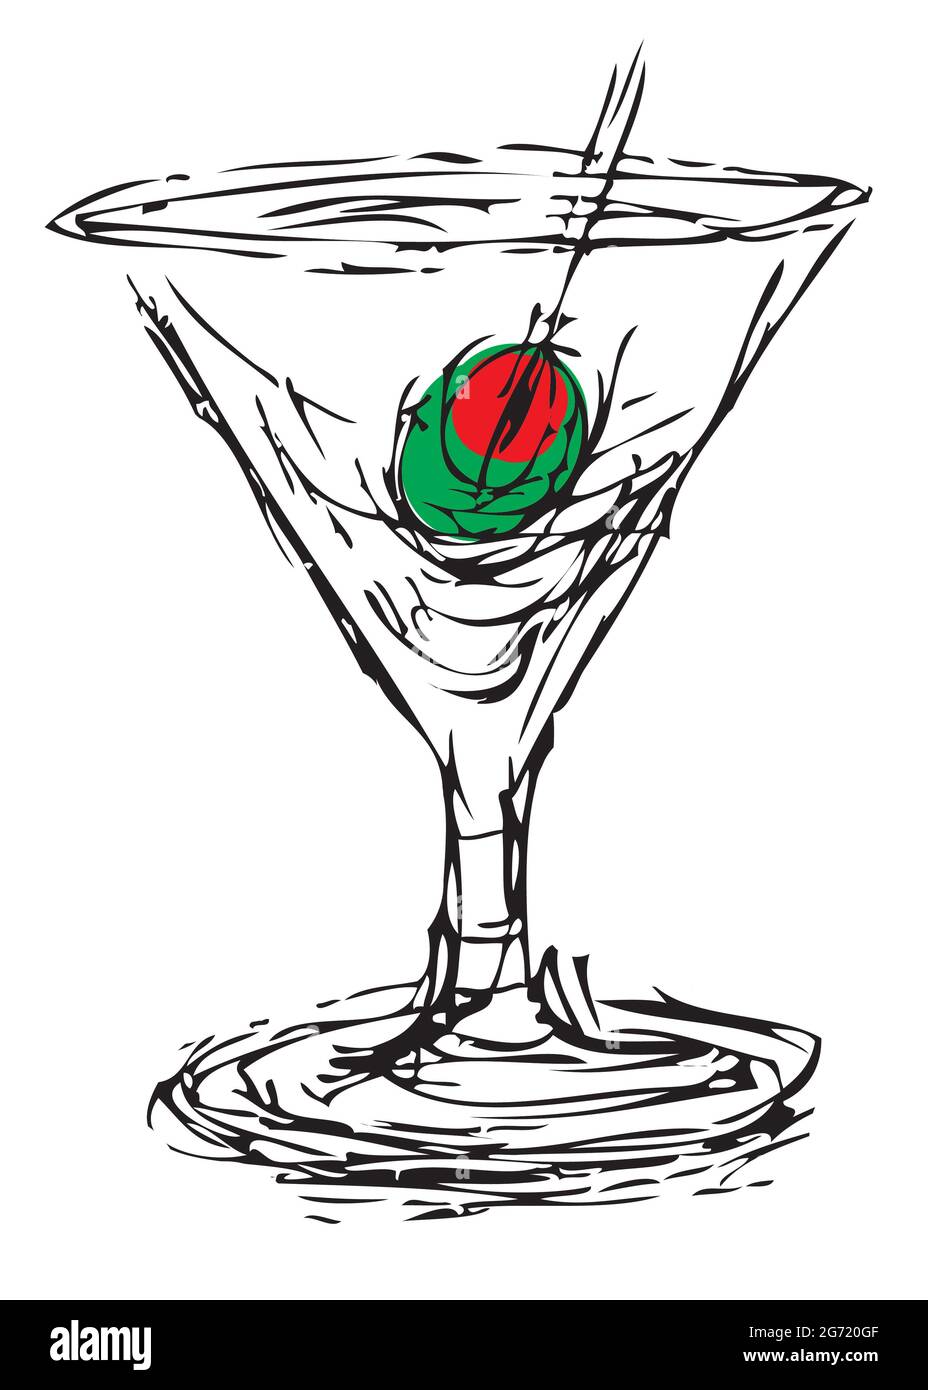 Disegno a inchiostro di un cocktail martini con un'oliva Foto Stock